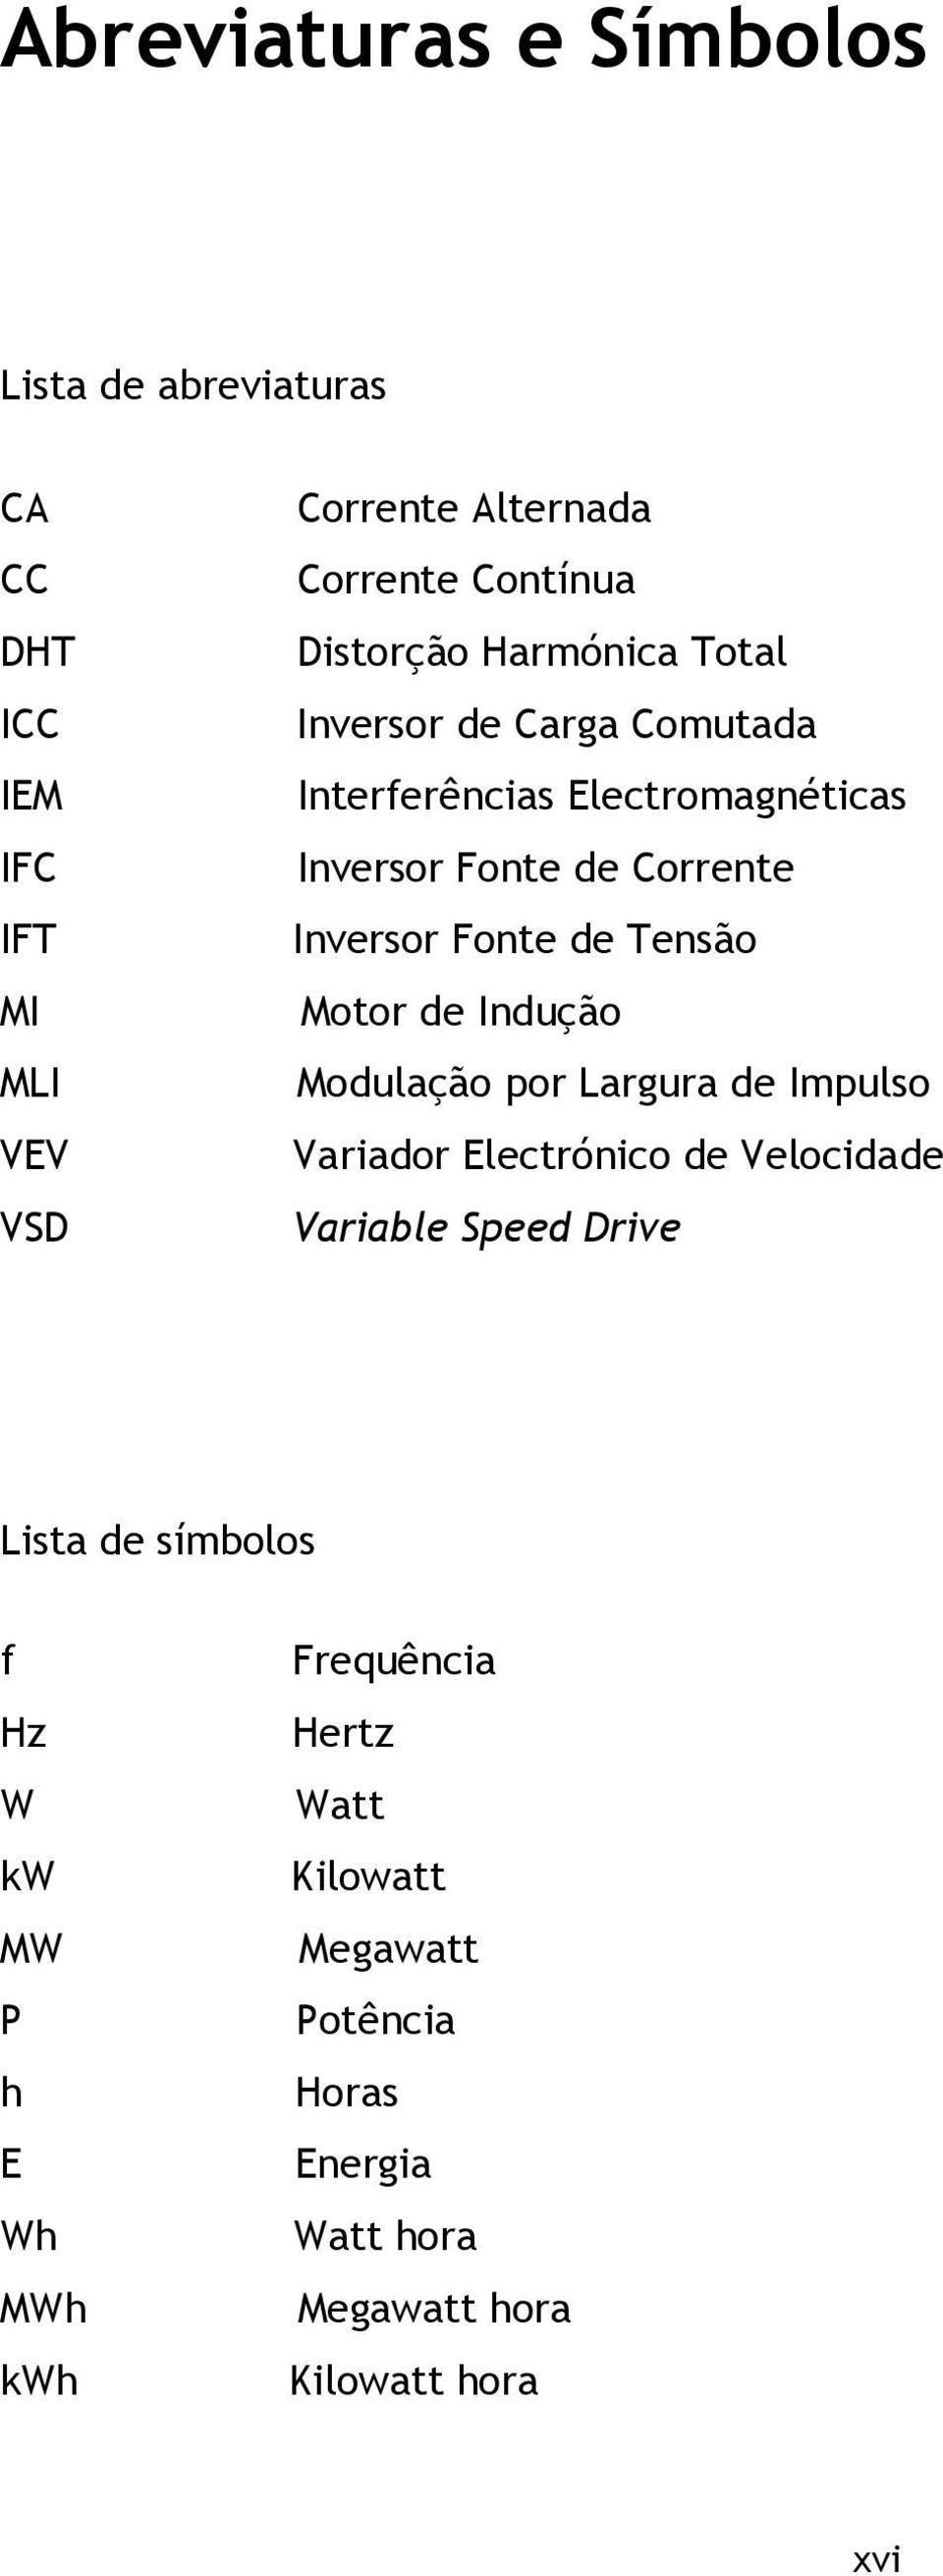 de Tensão Motor de Indução Modulação por Largura de Impulso Variador Electrónico de Velocidade Variable Speed Drive Lista de